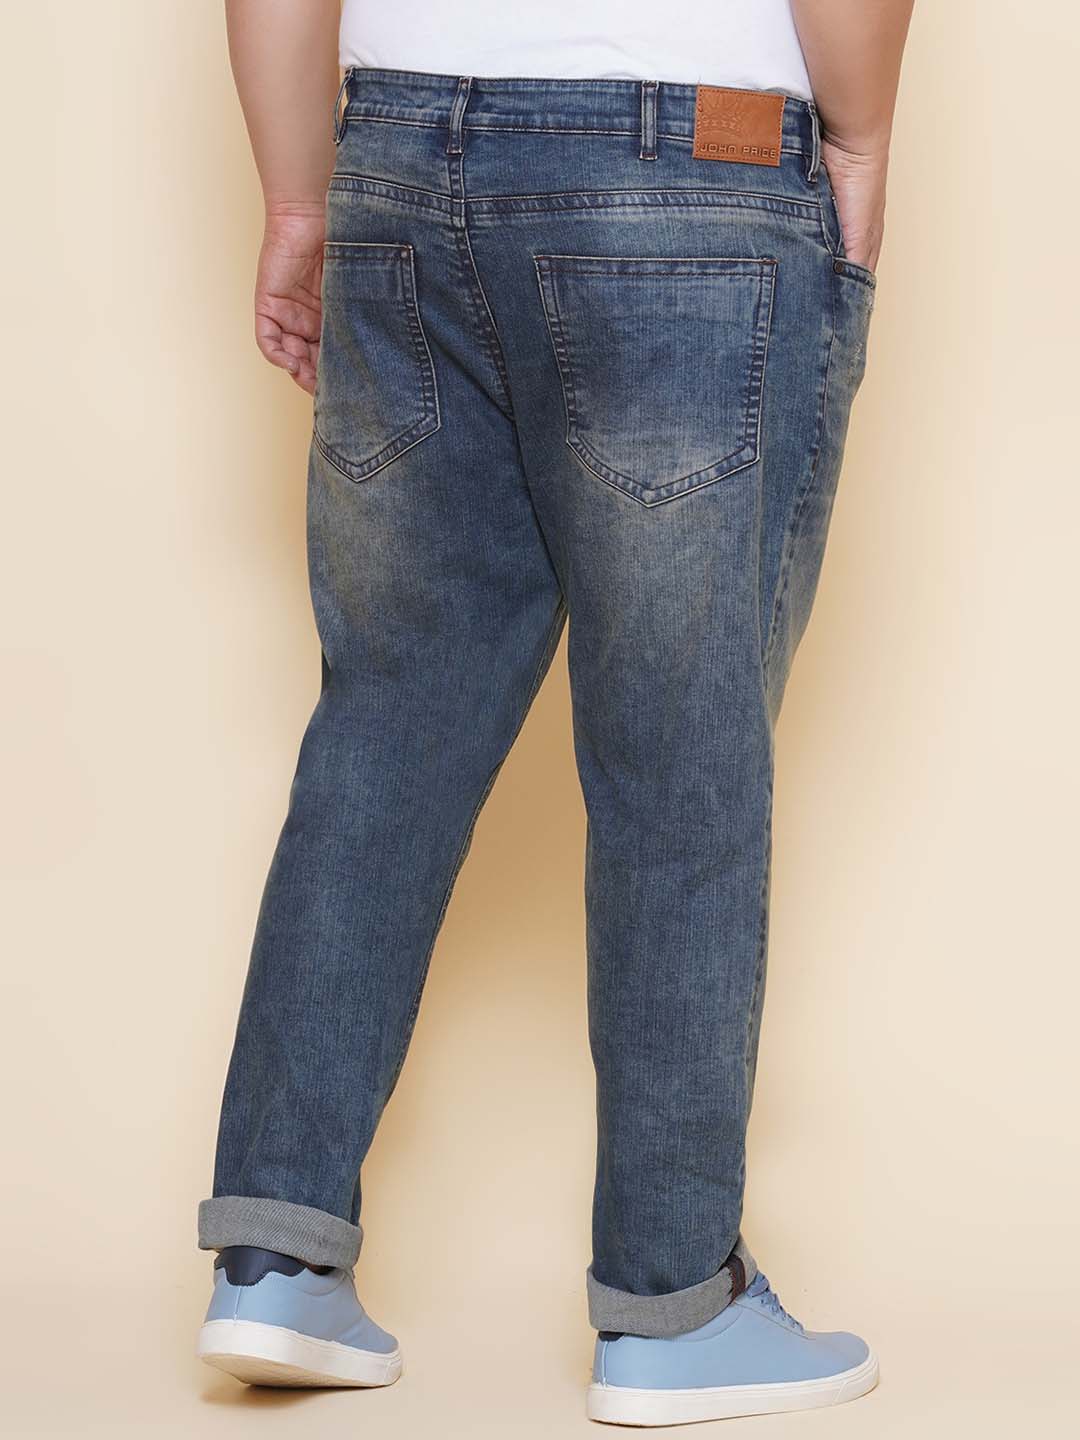 bottomwear/jeans/PJPJ60114/pjpj60114-5.jpg